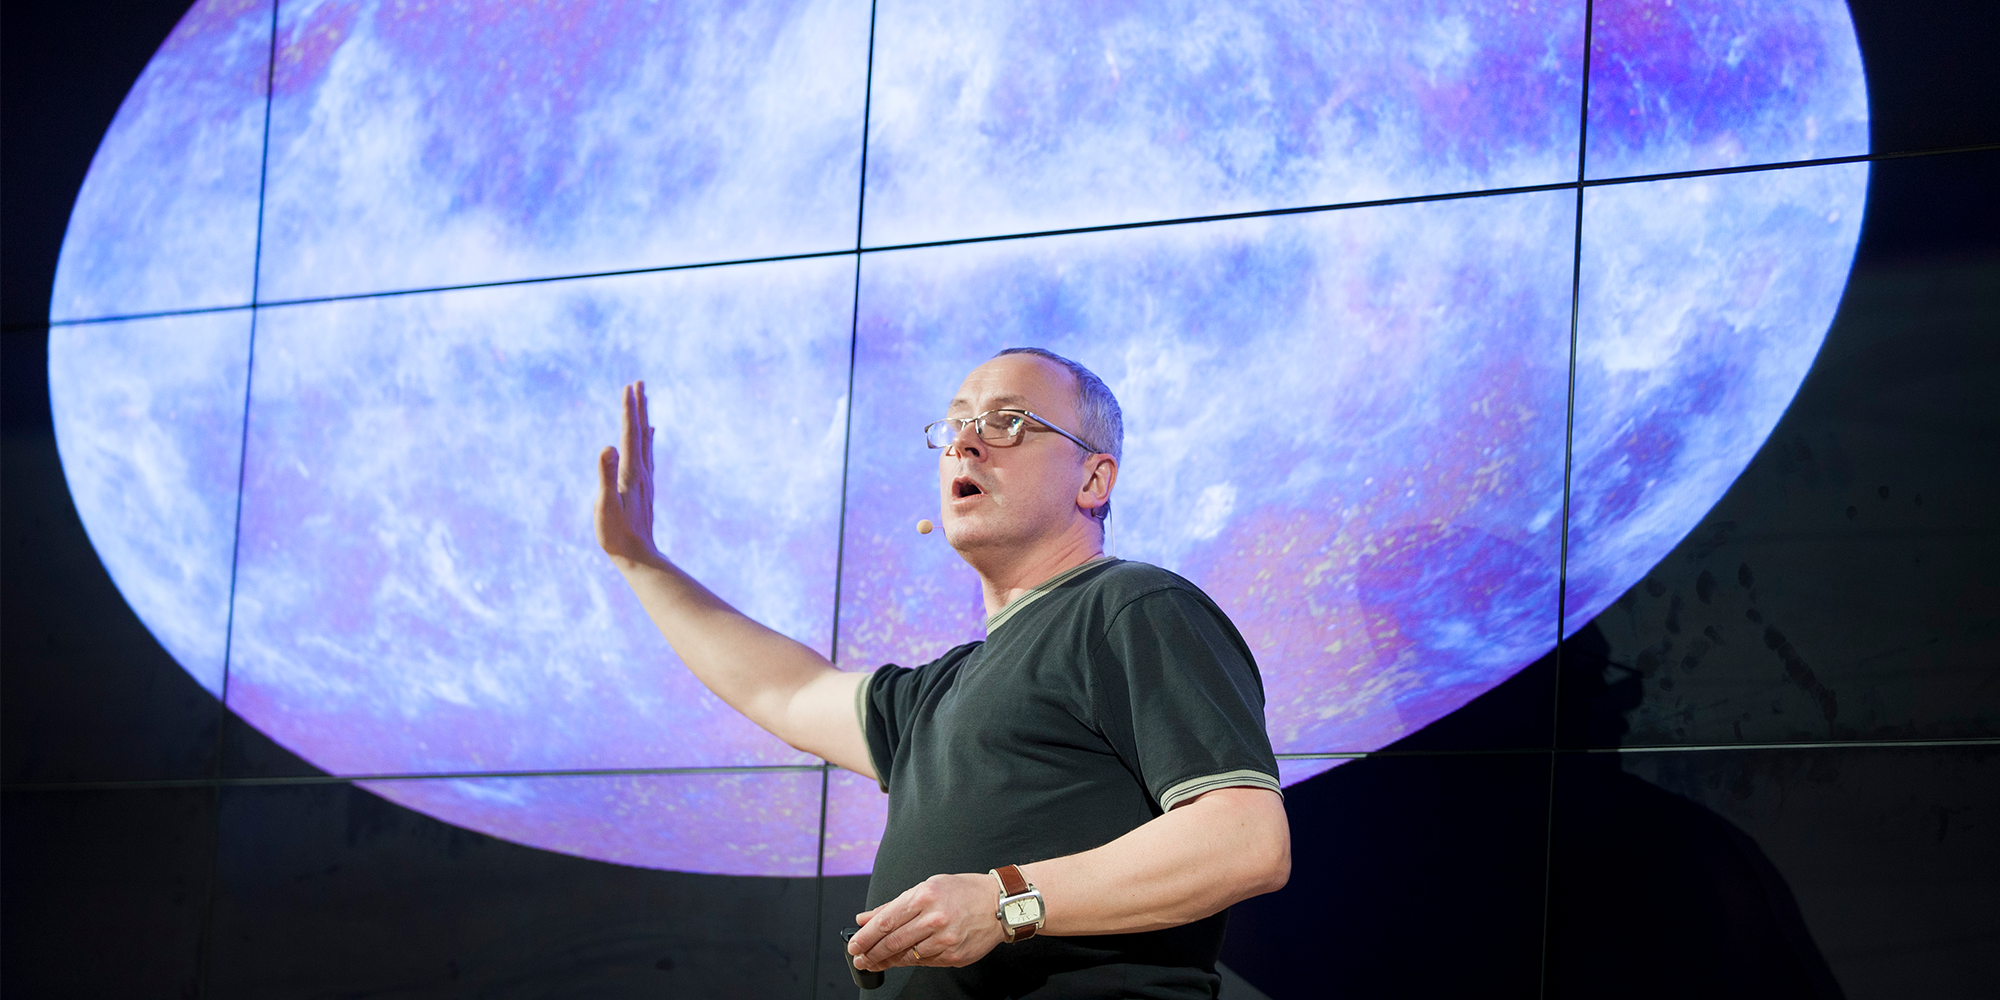 Michael linden vørnle foredrag fof om rummet og universet